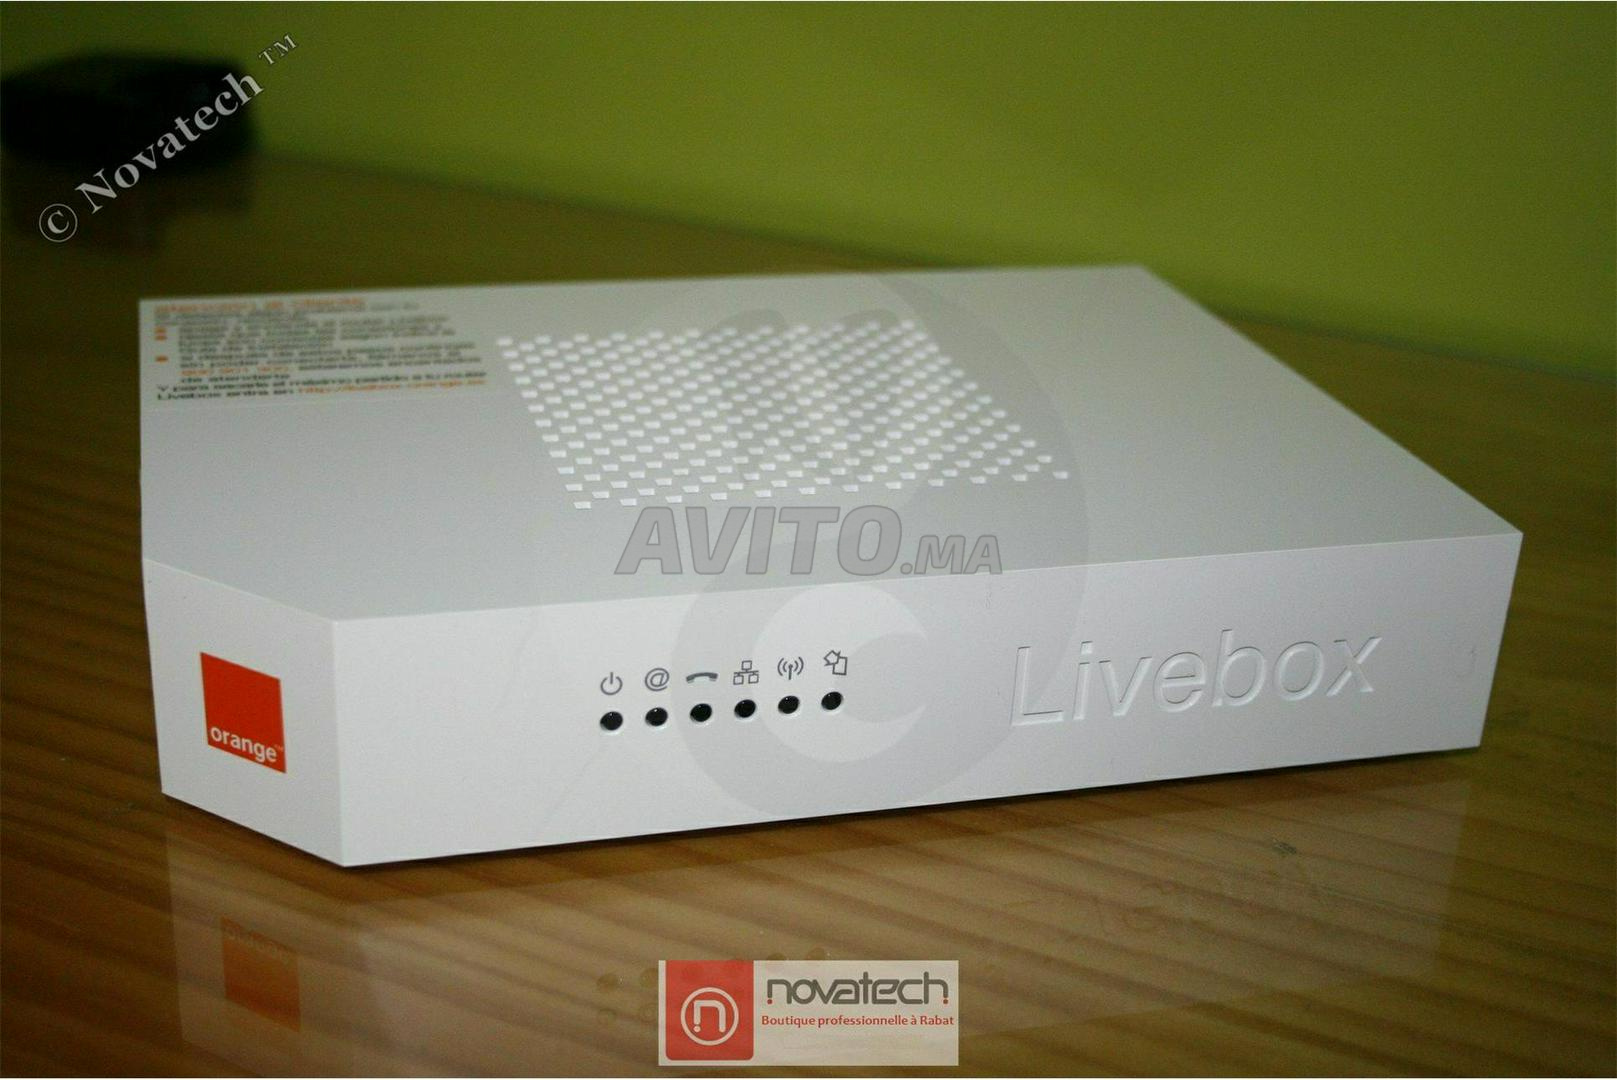 Routeur Wifi Livebox 2.1 Configuré avec ADSL-IAM - 4